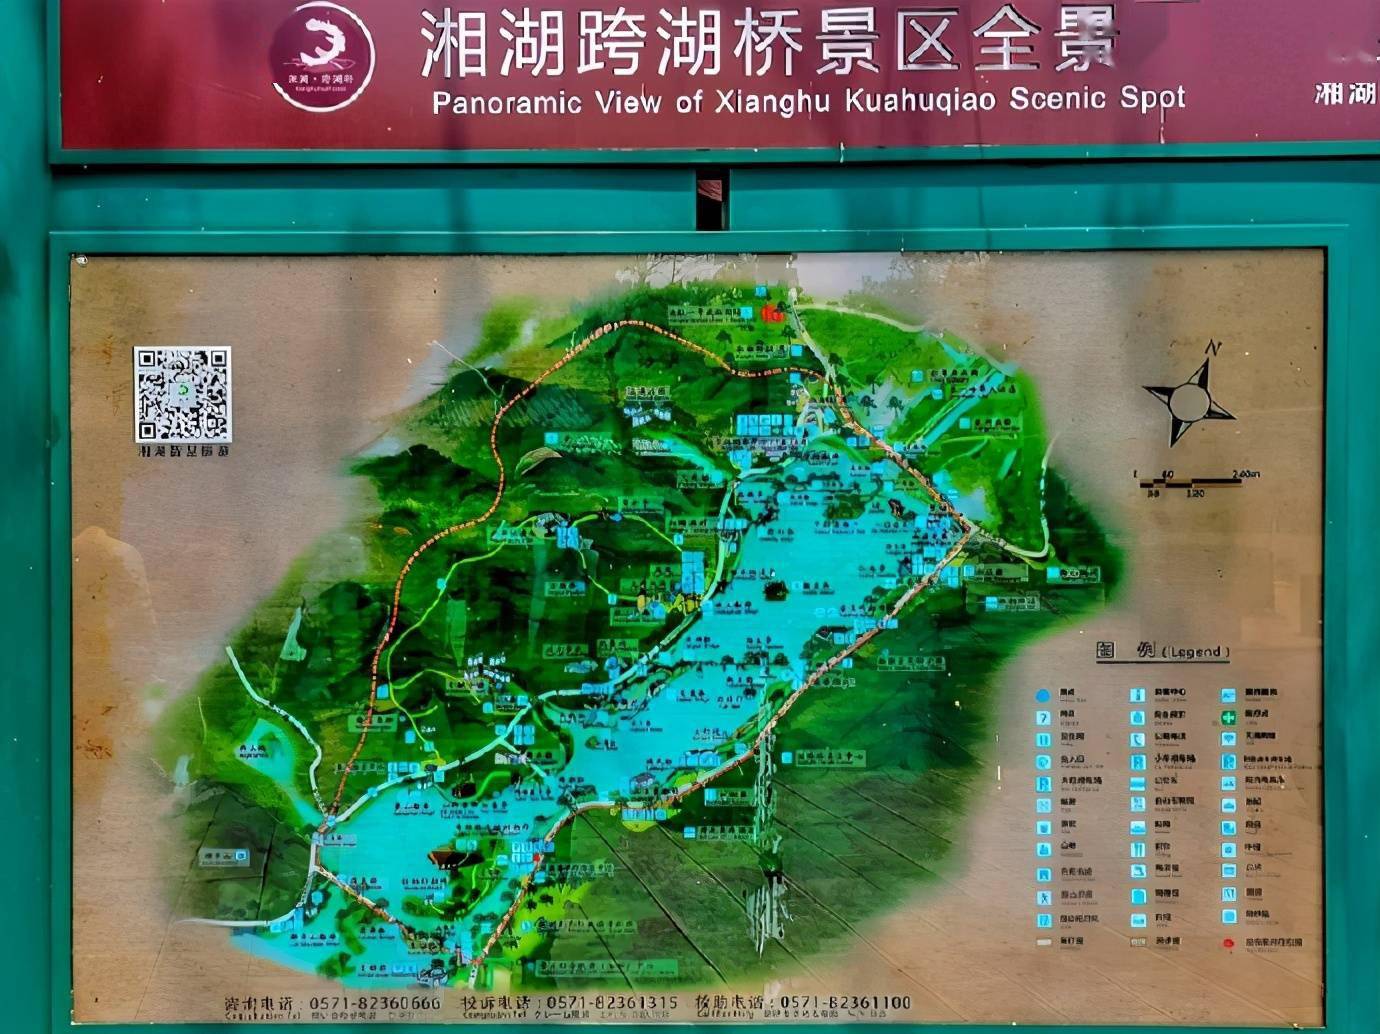 西湖的姐妹湖湘湖,华夏文明的发源地之一,跨湖桥文化遗址